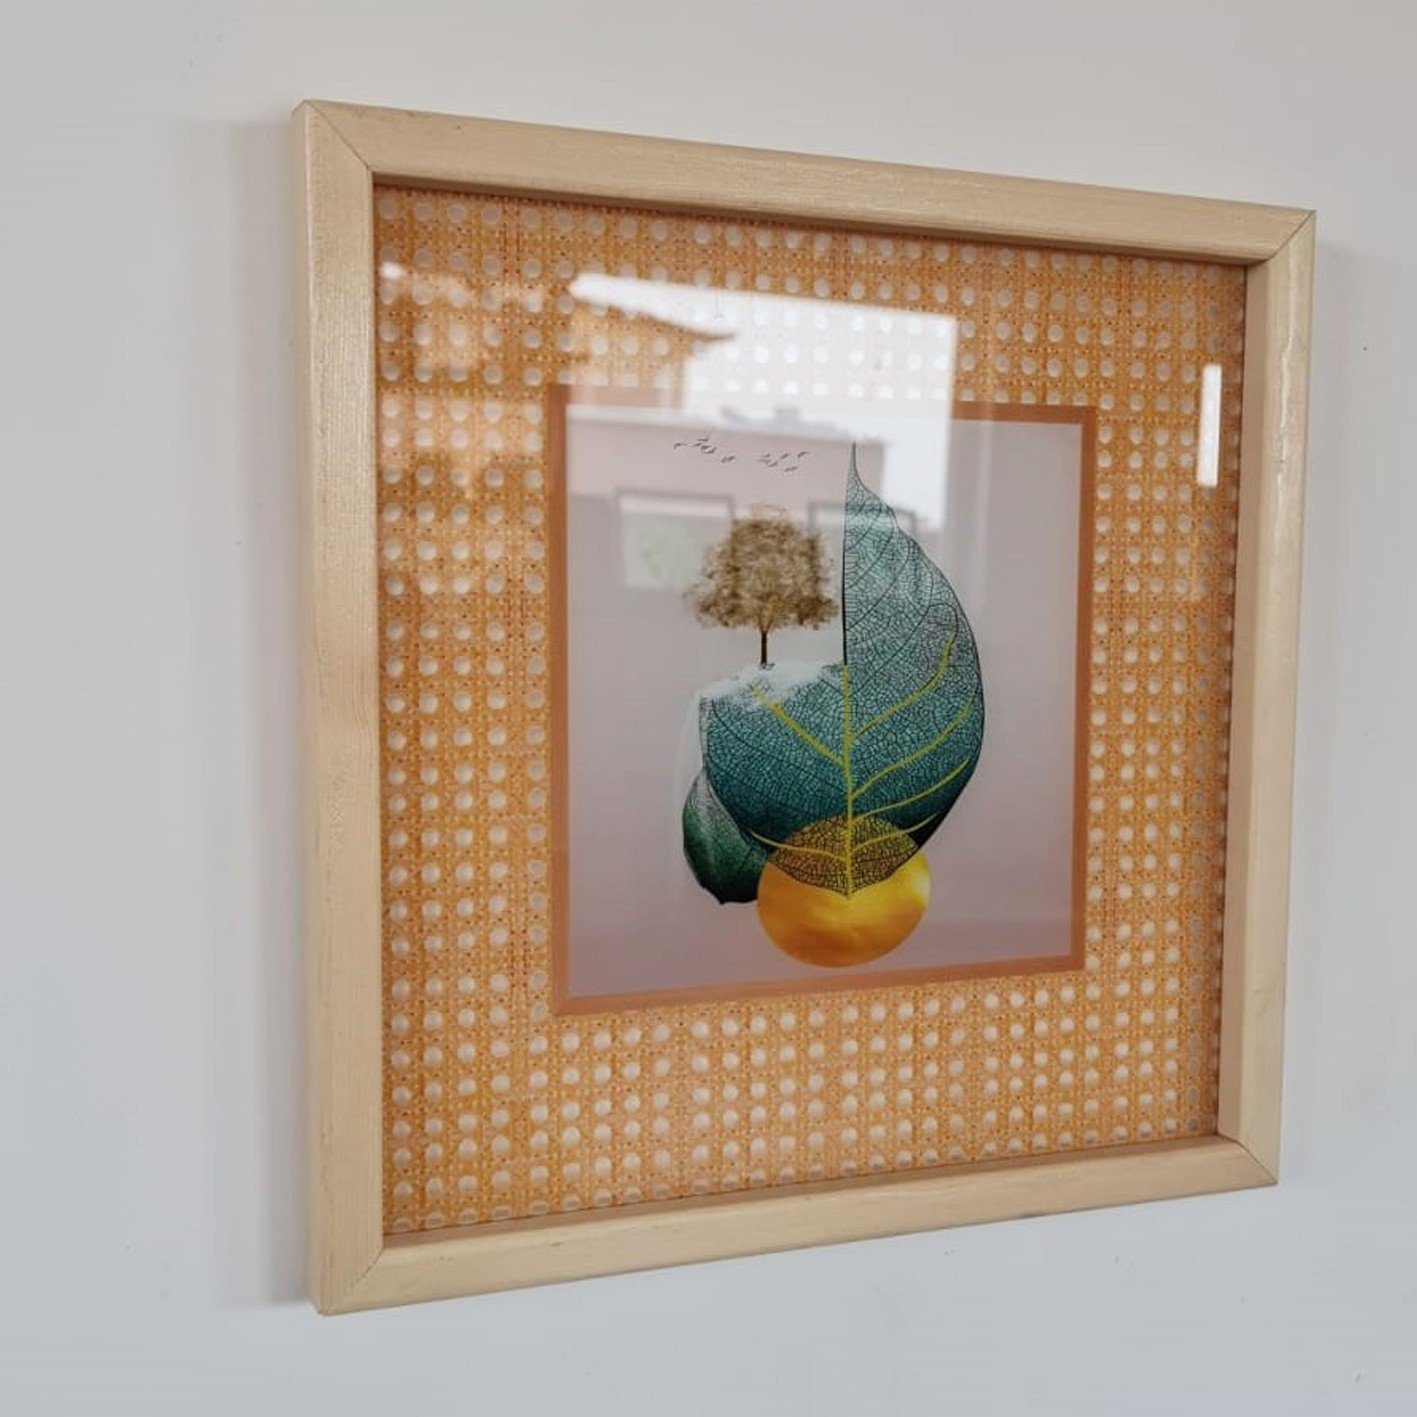 Wallity Leinwandbild ALP1279, Bunt, Glas 100% 32 x 32 cm